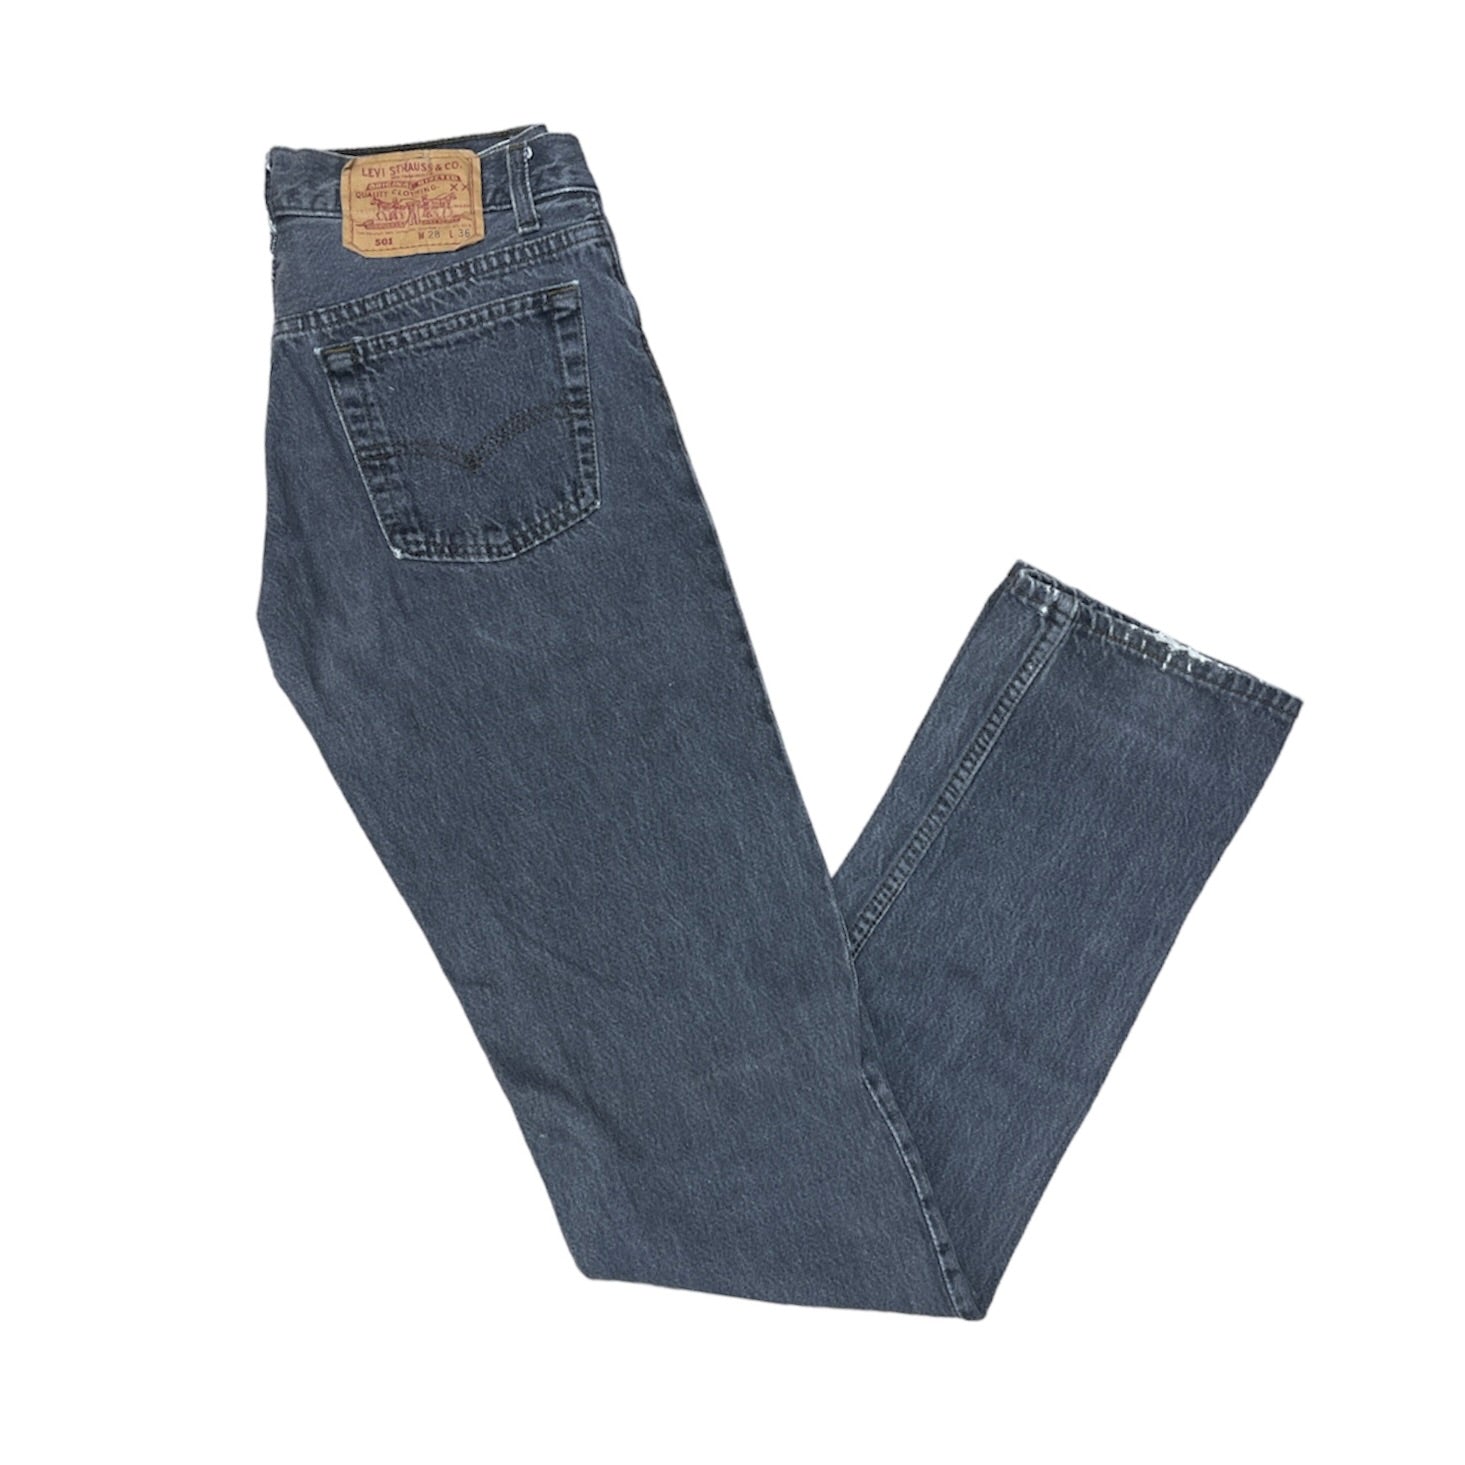 Vintage Levis 501 Grey Jeans (W28/L36)